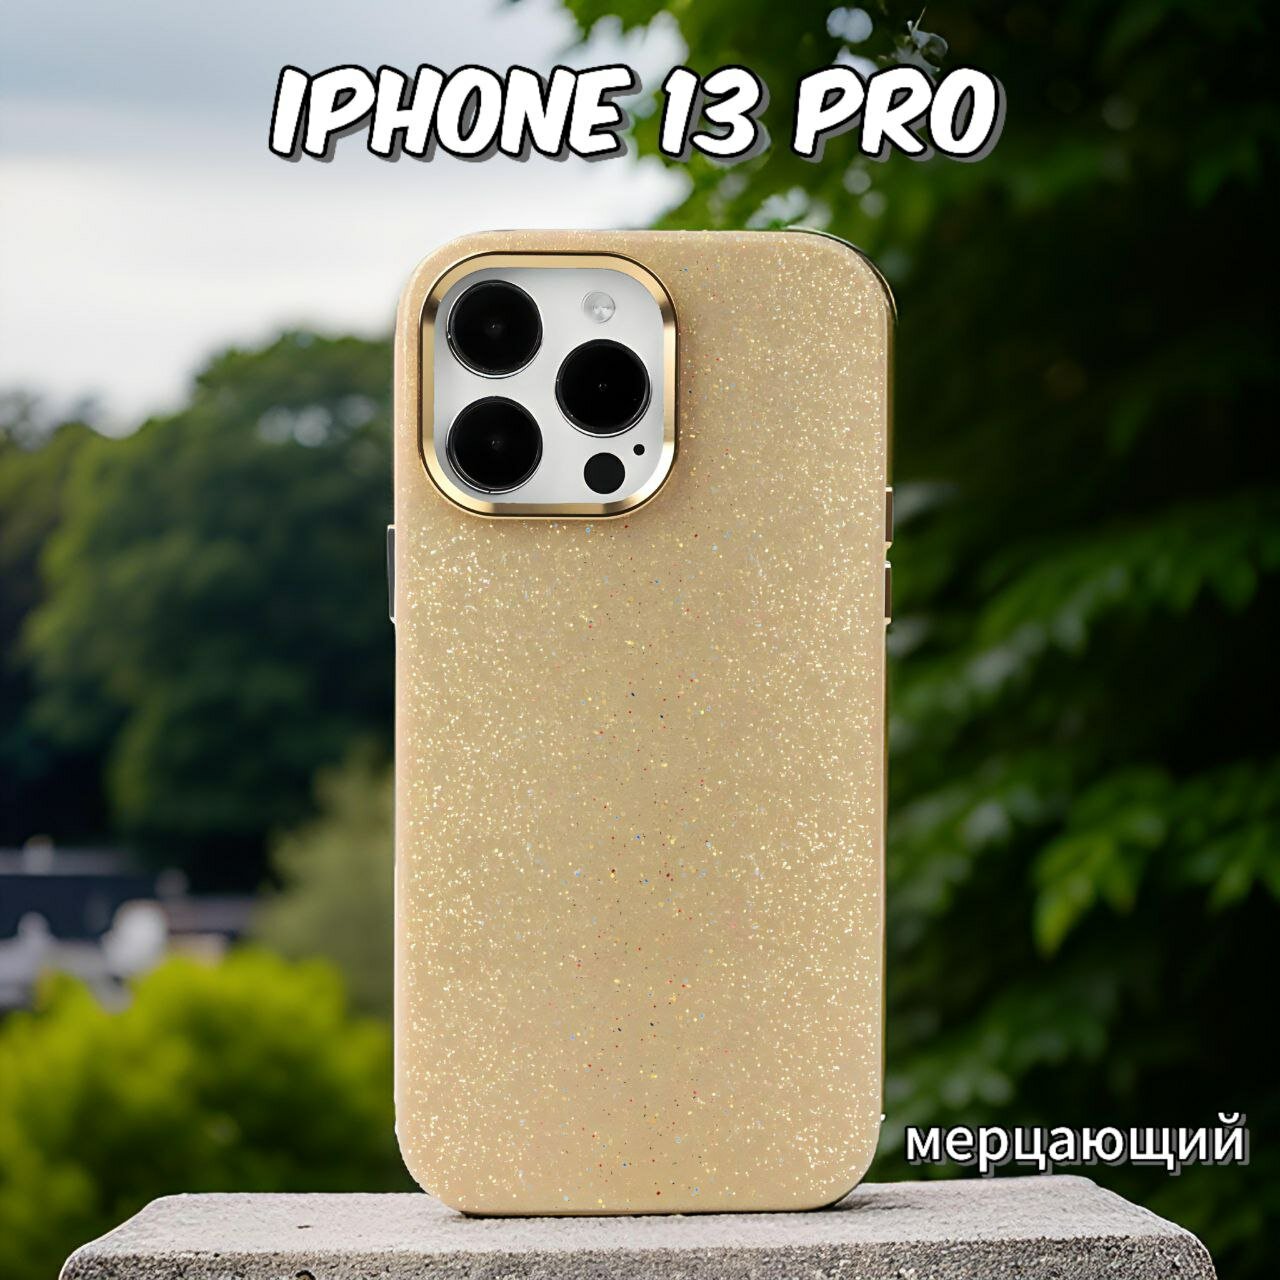 Чехол для iPhone 13 Pro противоударный на Айфон 13 Про блестящий цвет мерцающий золотой